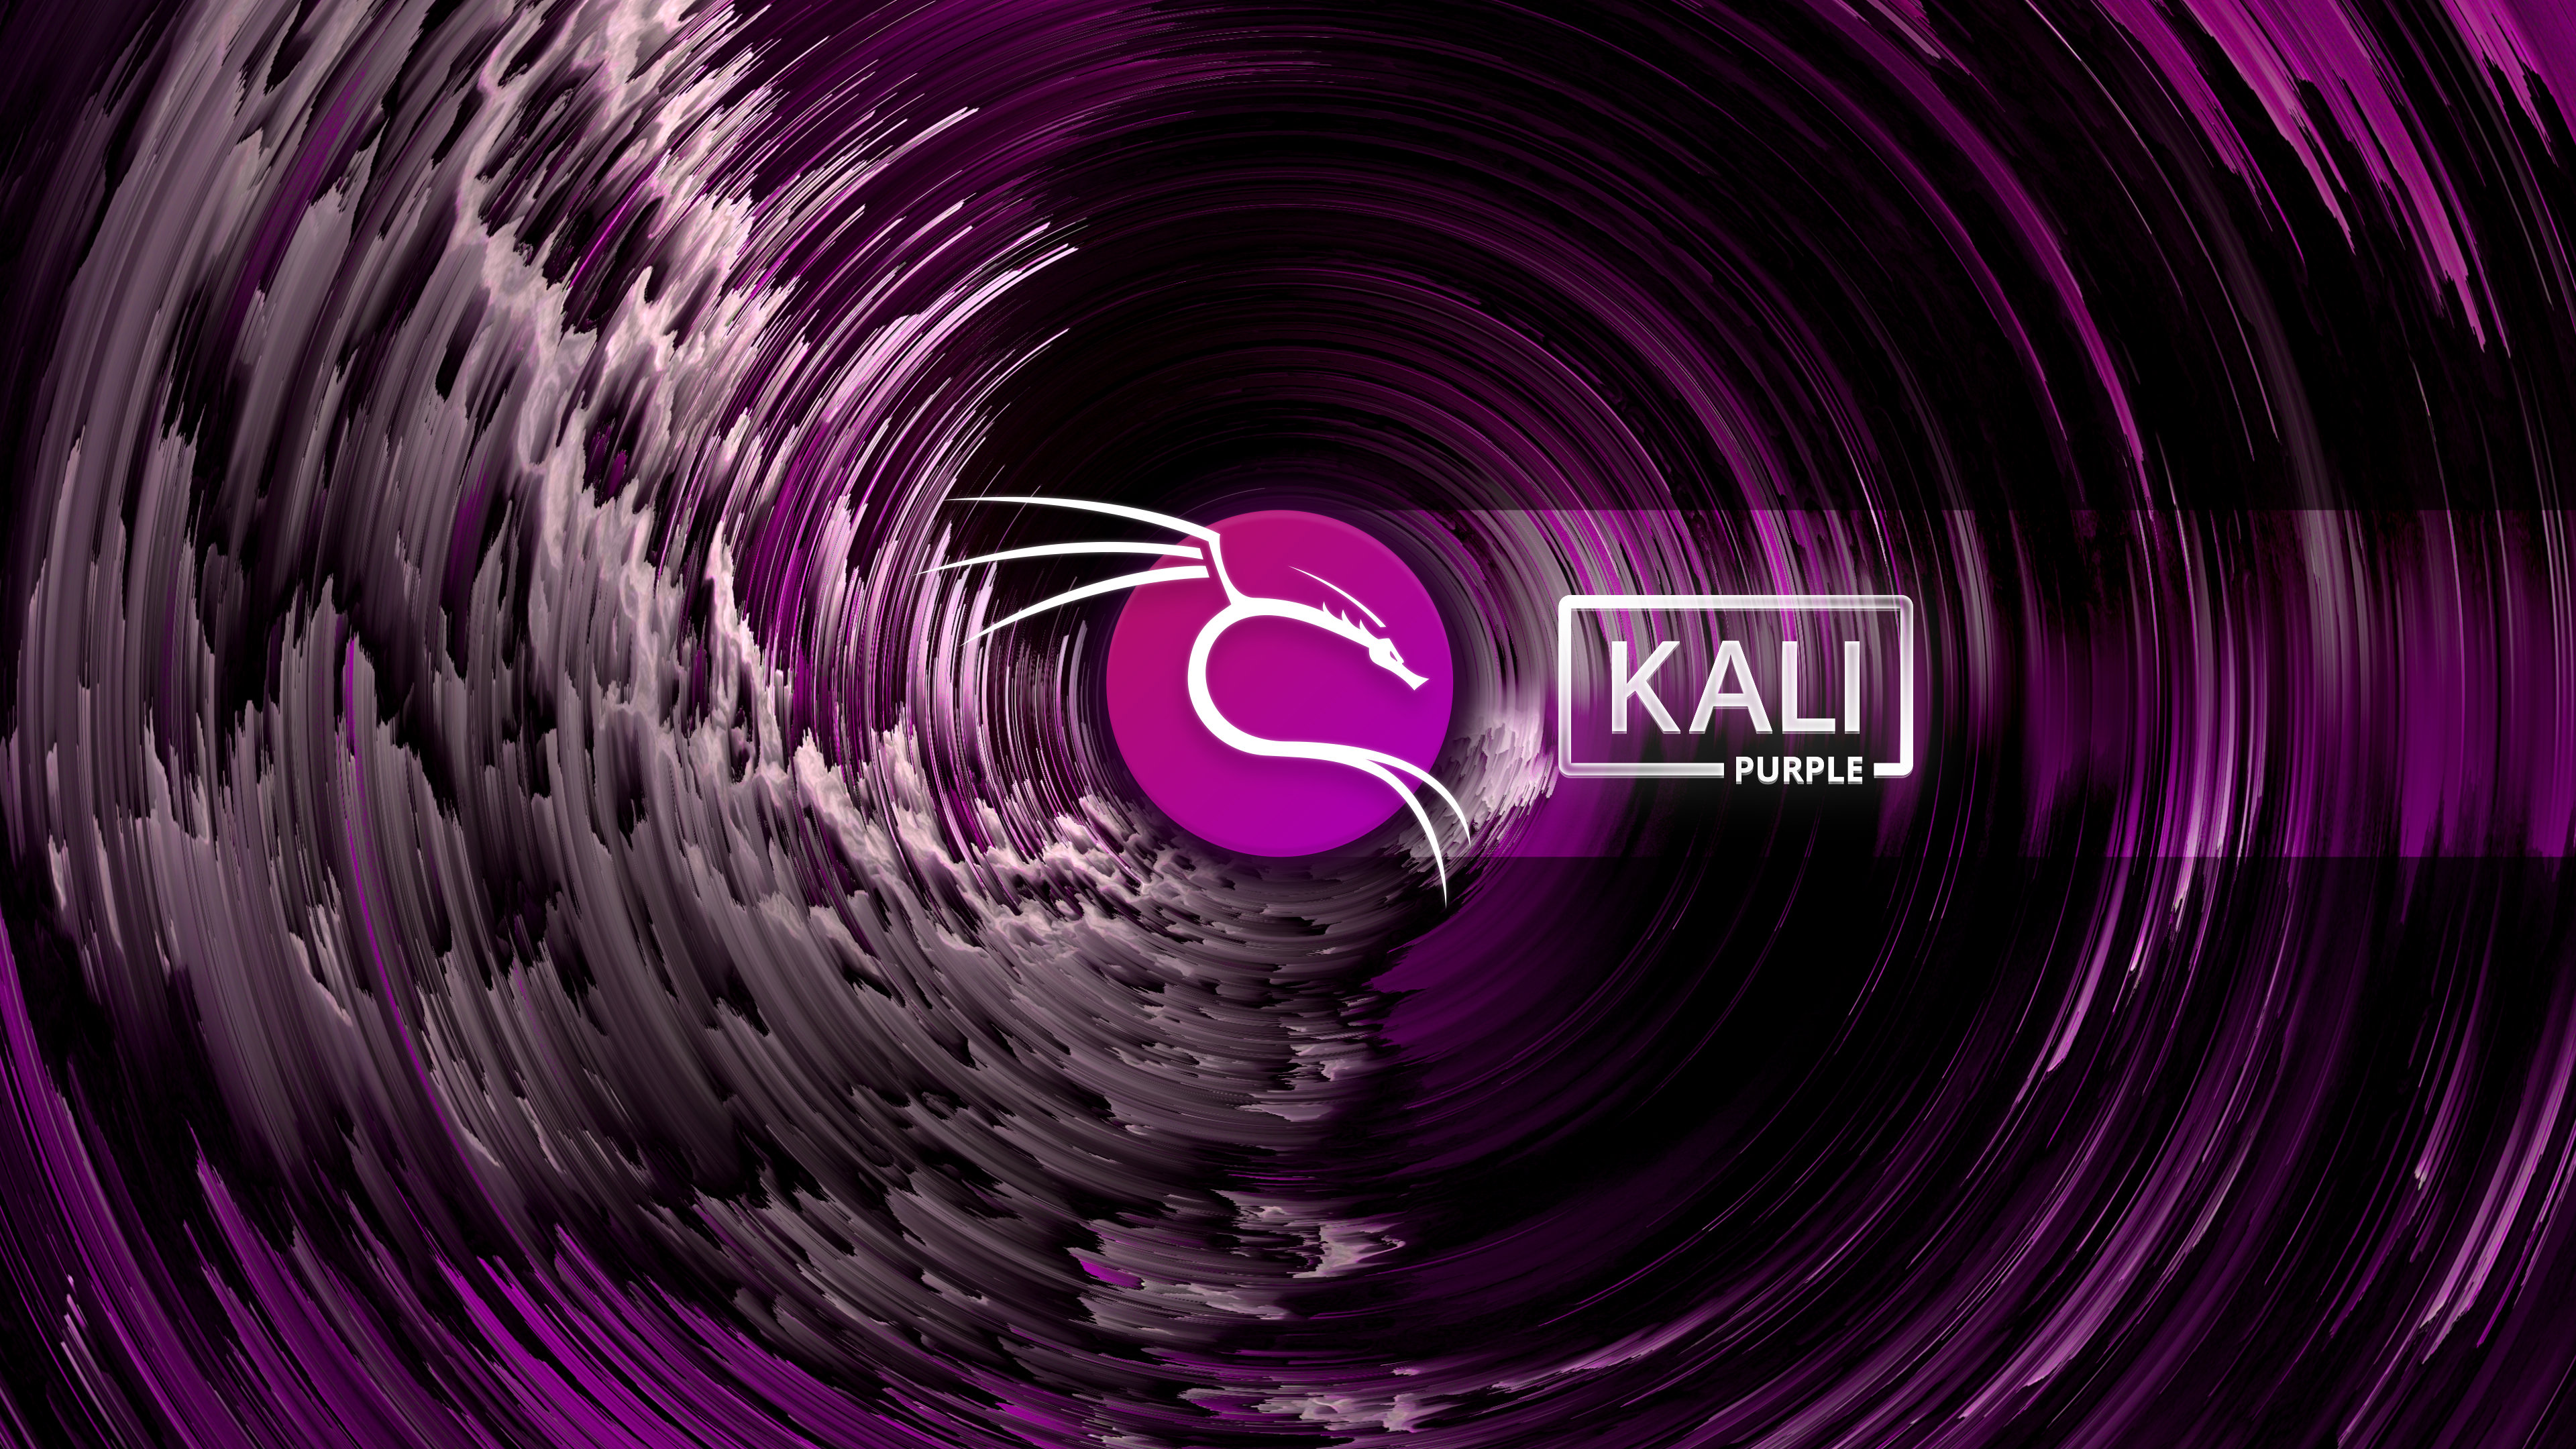 kali-purple-whirlwind.jpg